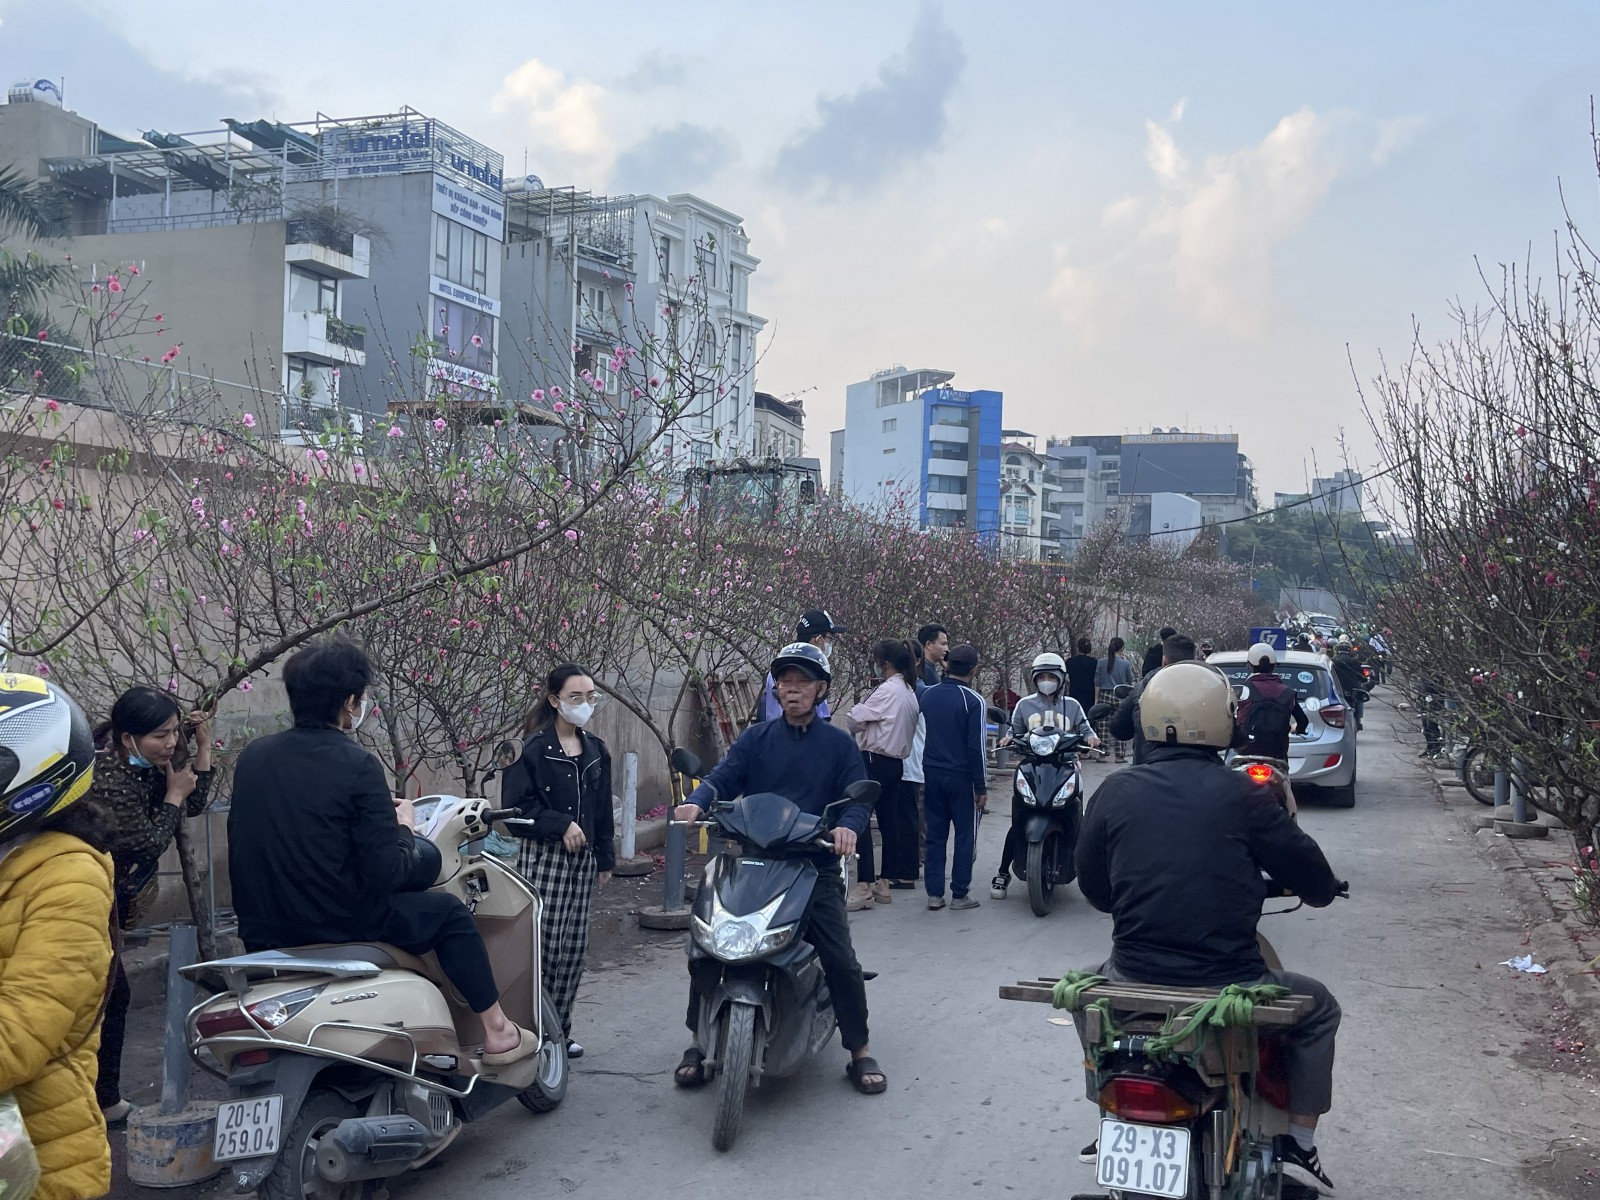 Tuy nhu cầu mua sắm có giảm so với mọi năm, nhưng vào những ngày gần Tết, khu vực chợ hoa Long Biên vẫn thu hút lượng khách hàng đông đúc.